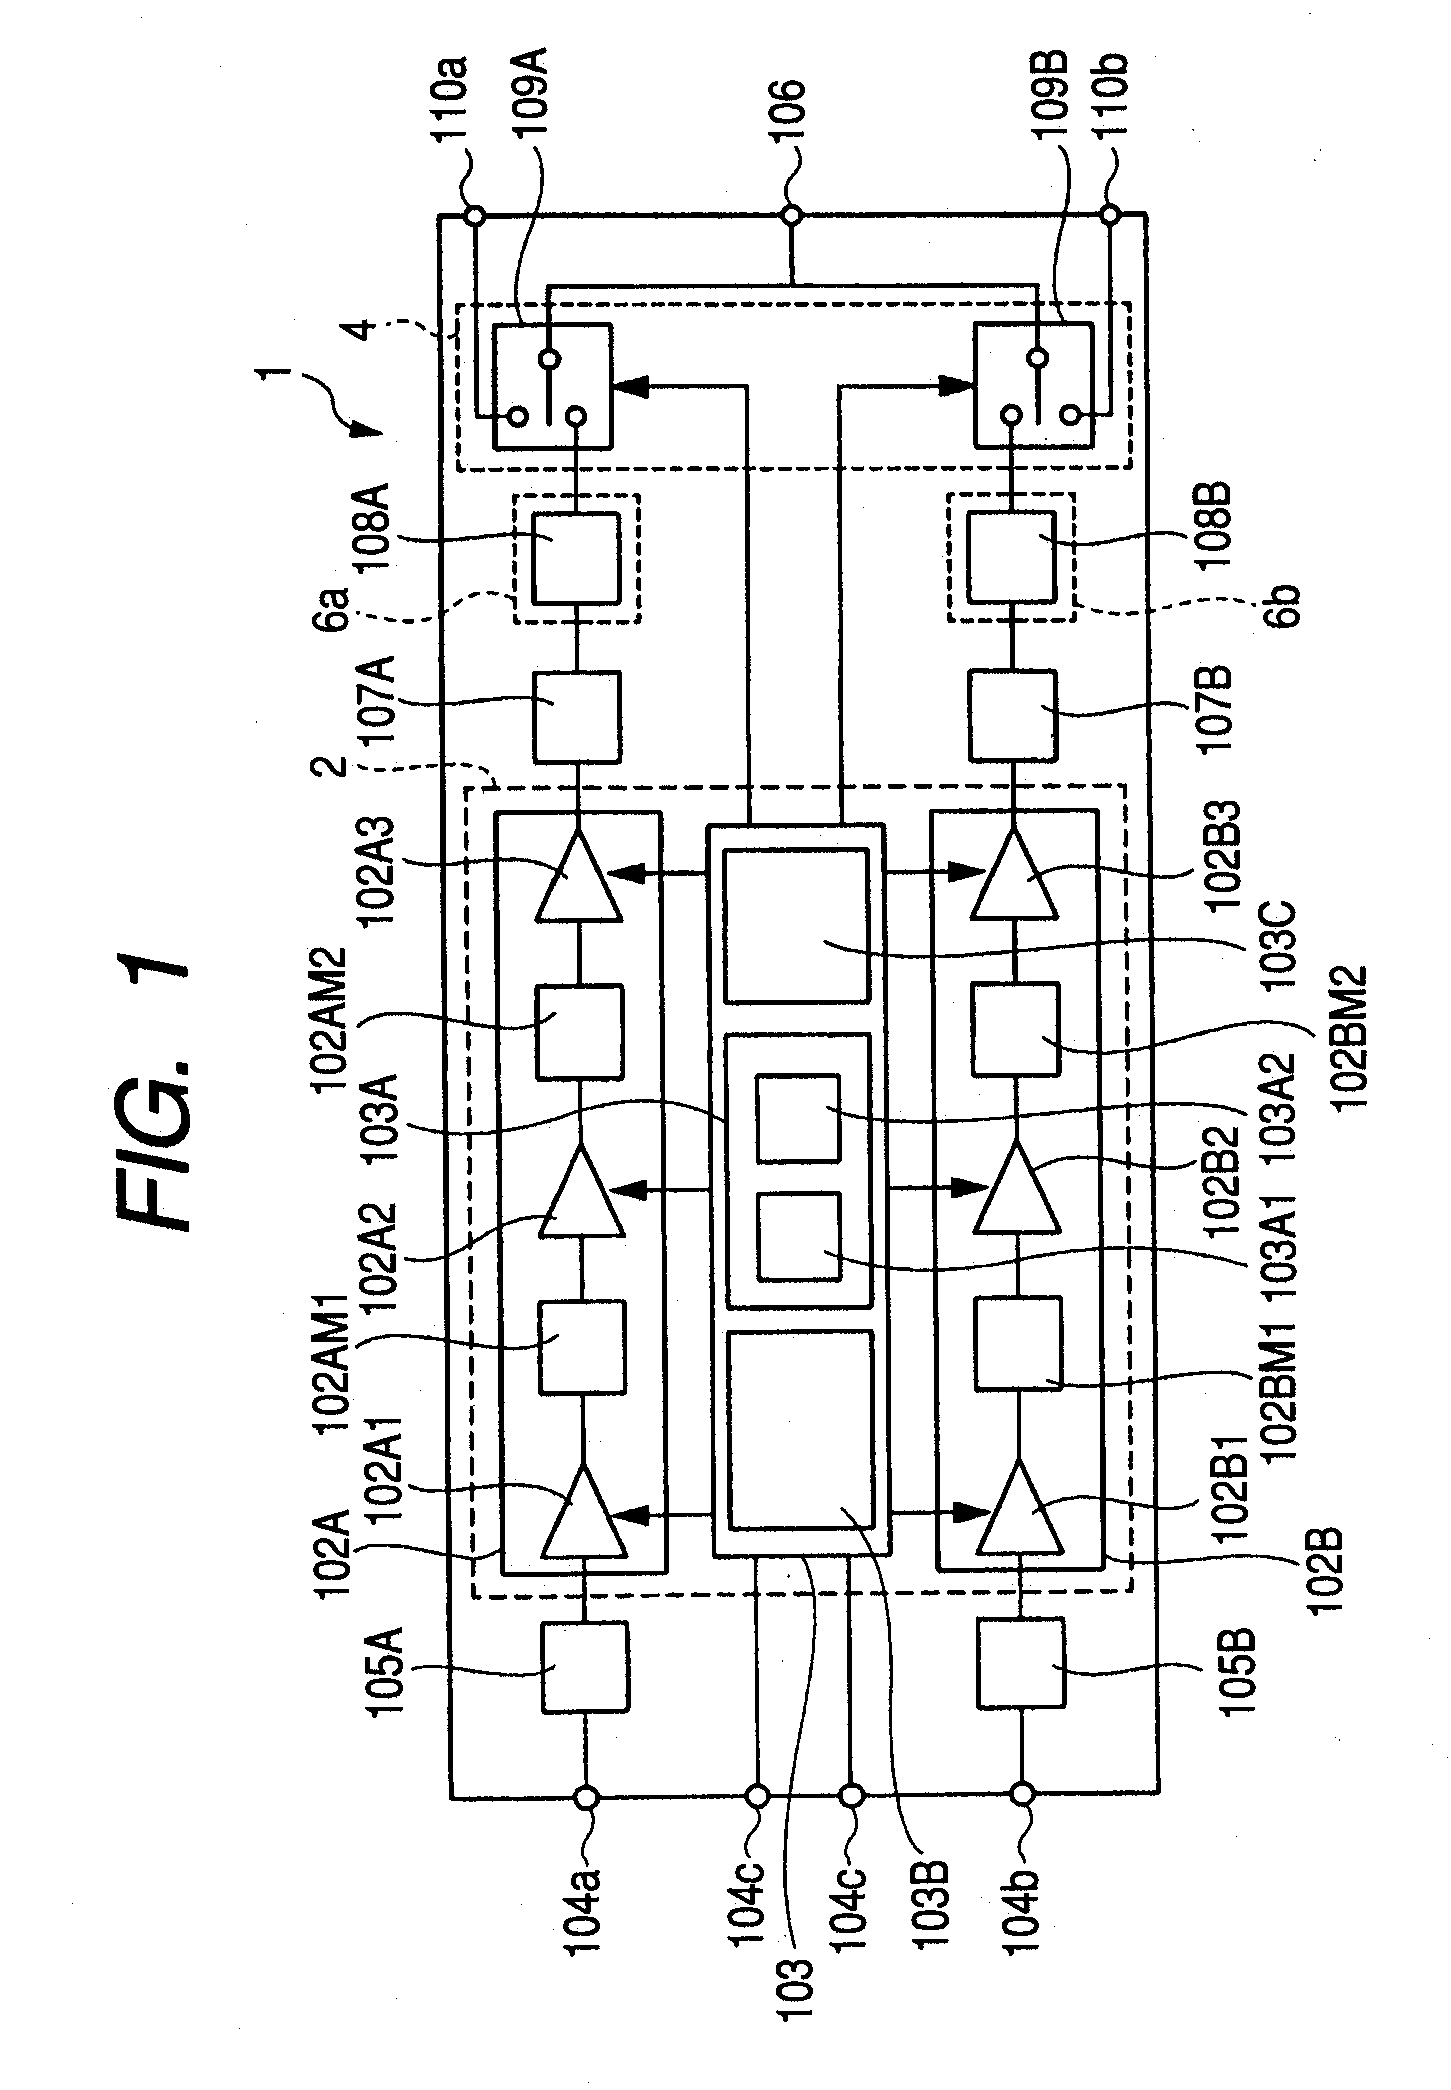 RF power module